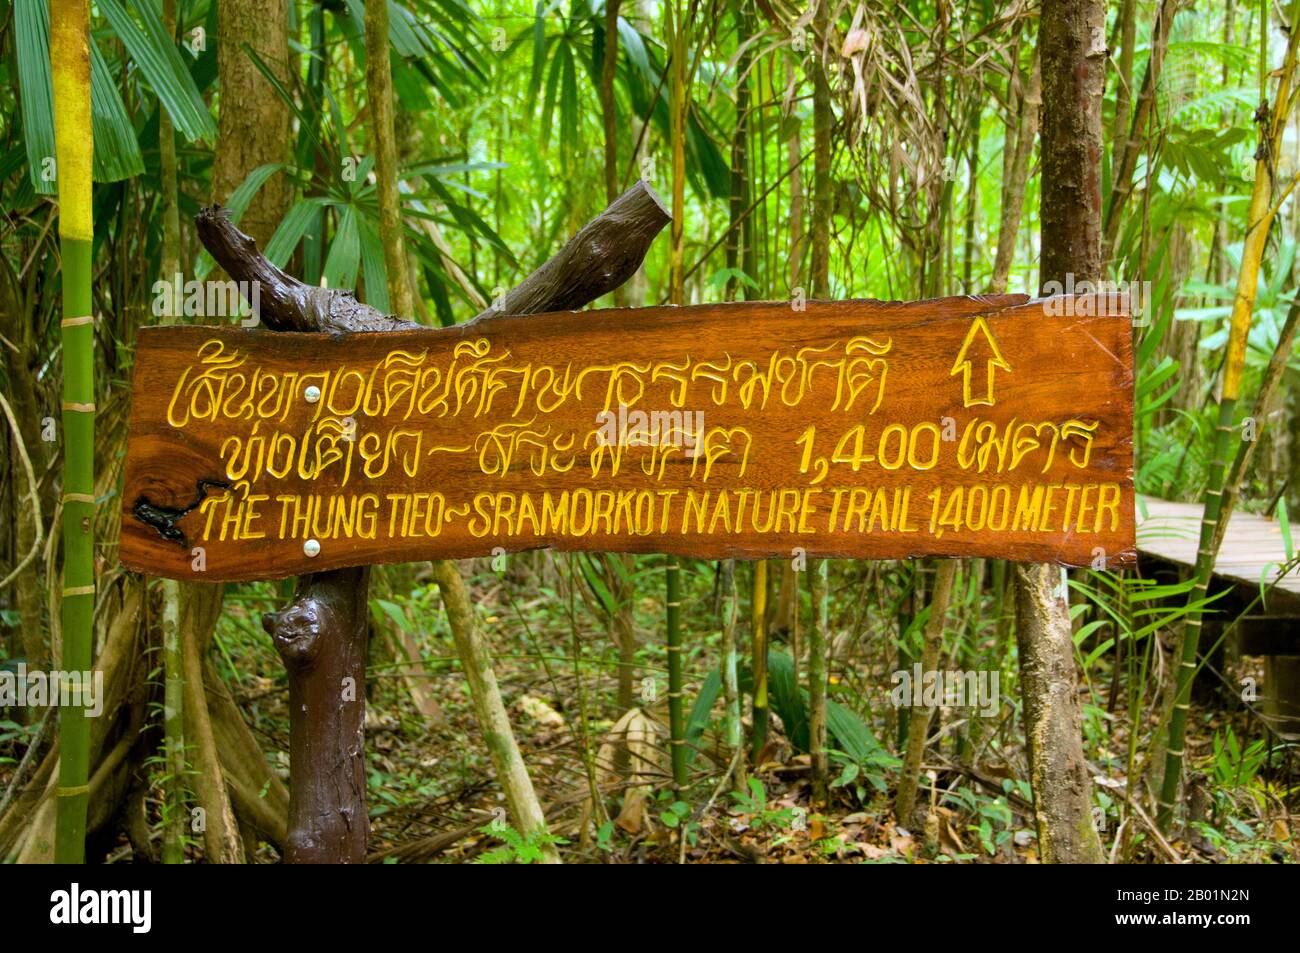 Thailand: Schild auf dem Wanderweg, Tung Tieo Forest Trail, Khao Pra - Bang Khram Wildlife Sanctuary, Provinz Krabi. Das Khao Pra - Bang Khram Wildlife Sanctuary liegt südöstlich von Krabi Town 18 km östlich der kleinen Stadt Khlong Thom. Das bei Vogelbeobachtern beliebte Schutzgebiet ist die Heimat der seltenen Gurney’s Pitta, einer bedrohten Art, die einst als ausgestorben galt, aber in sehr geringer Zahl sowohl hier als auch über die Grenze in abgelegenen Teilen Südmyanmars (Burma) wiederentdeckt wurde. Stockfoto